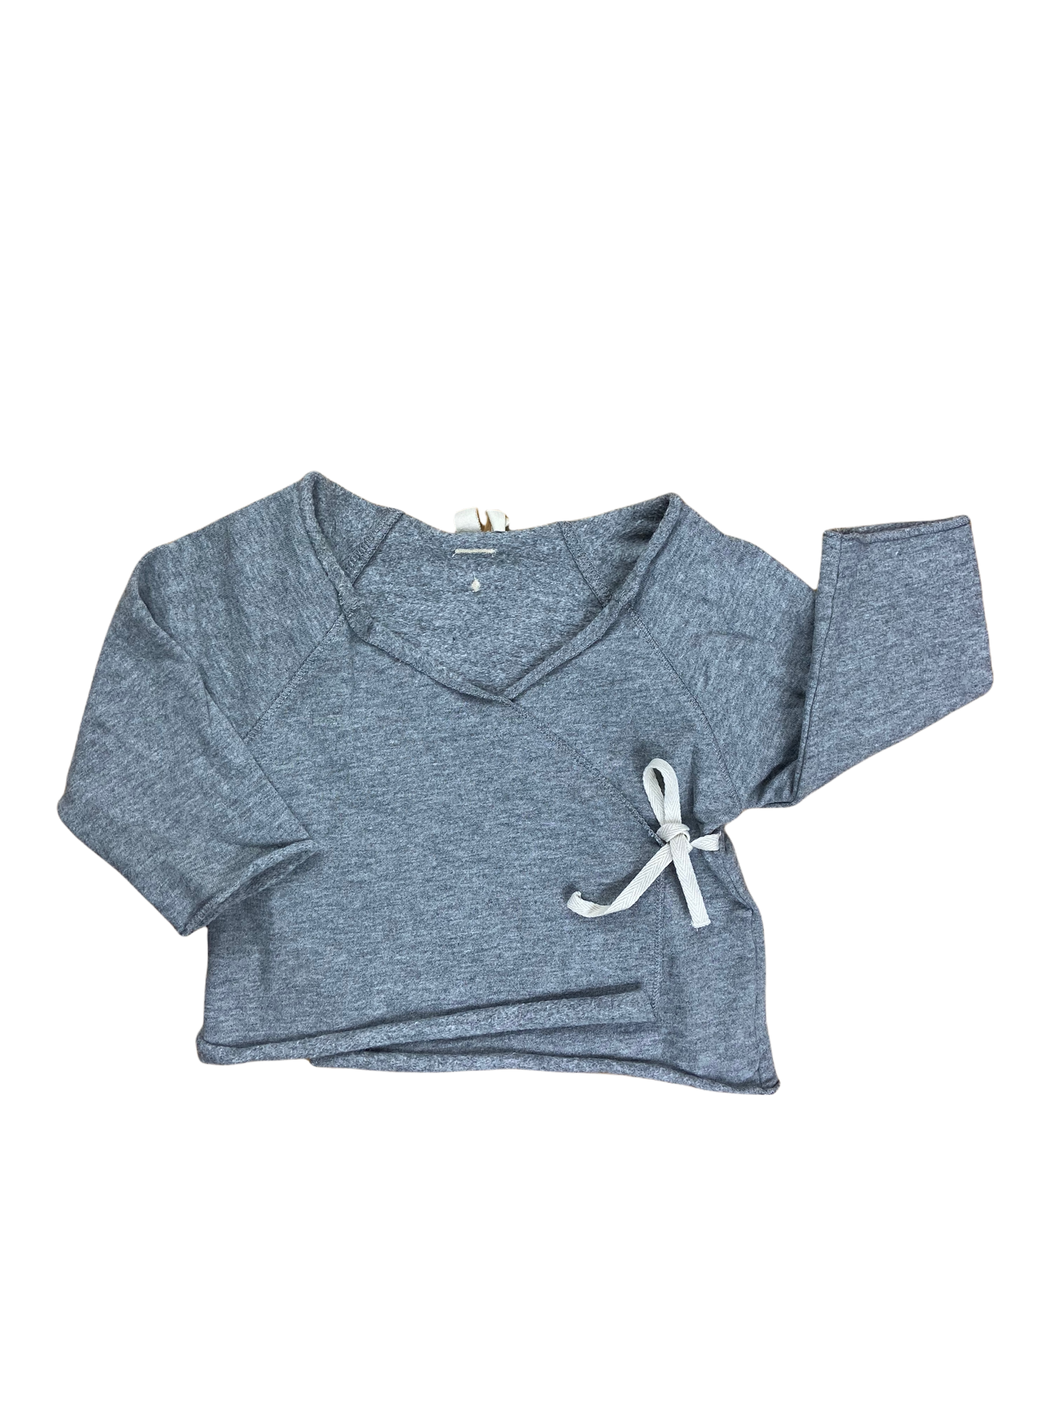 Gray Label Wickelshirt grau second hand Sale GOTS nachhaltige Kinderkleidung